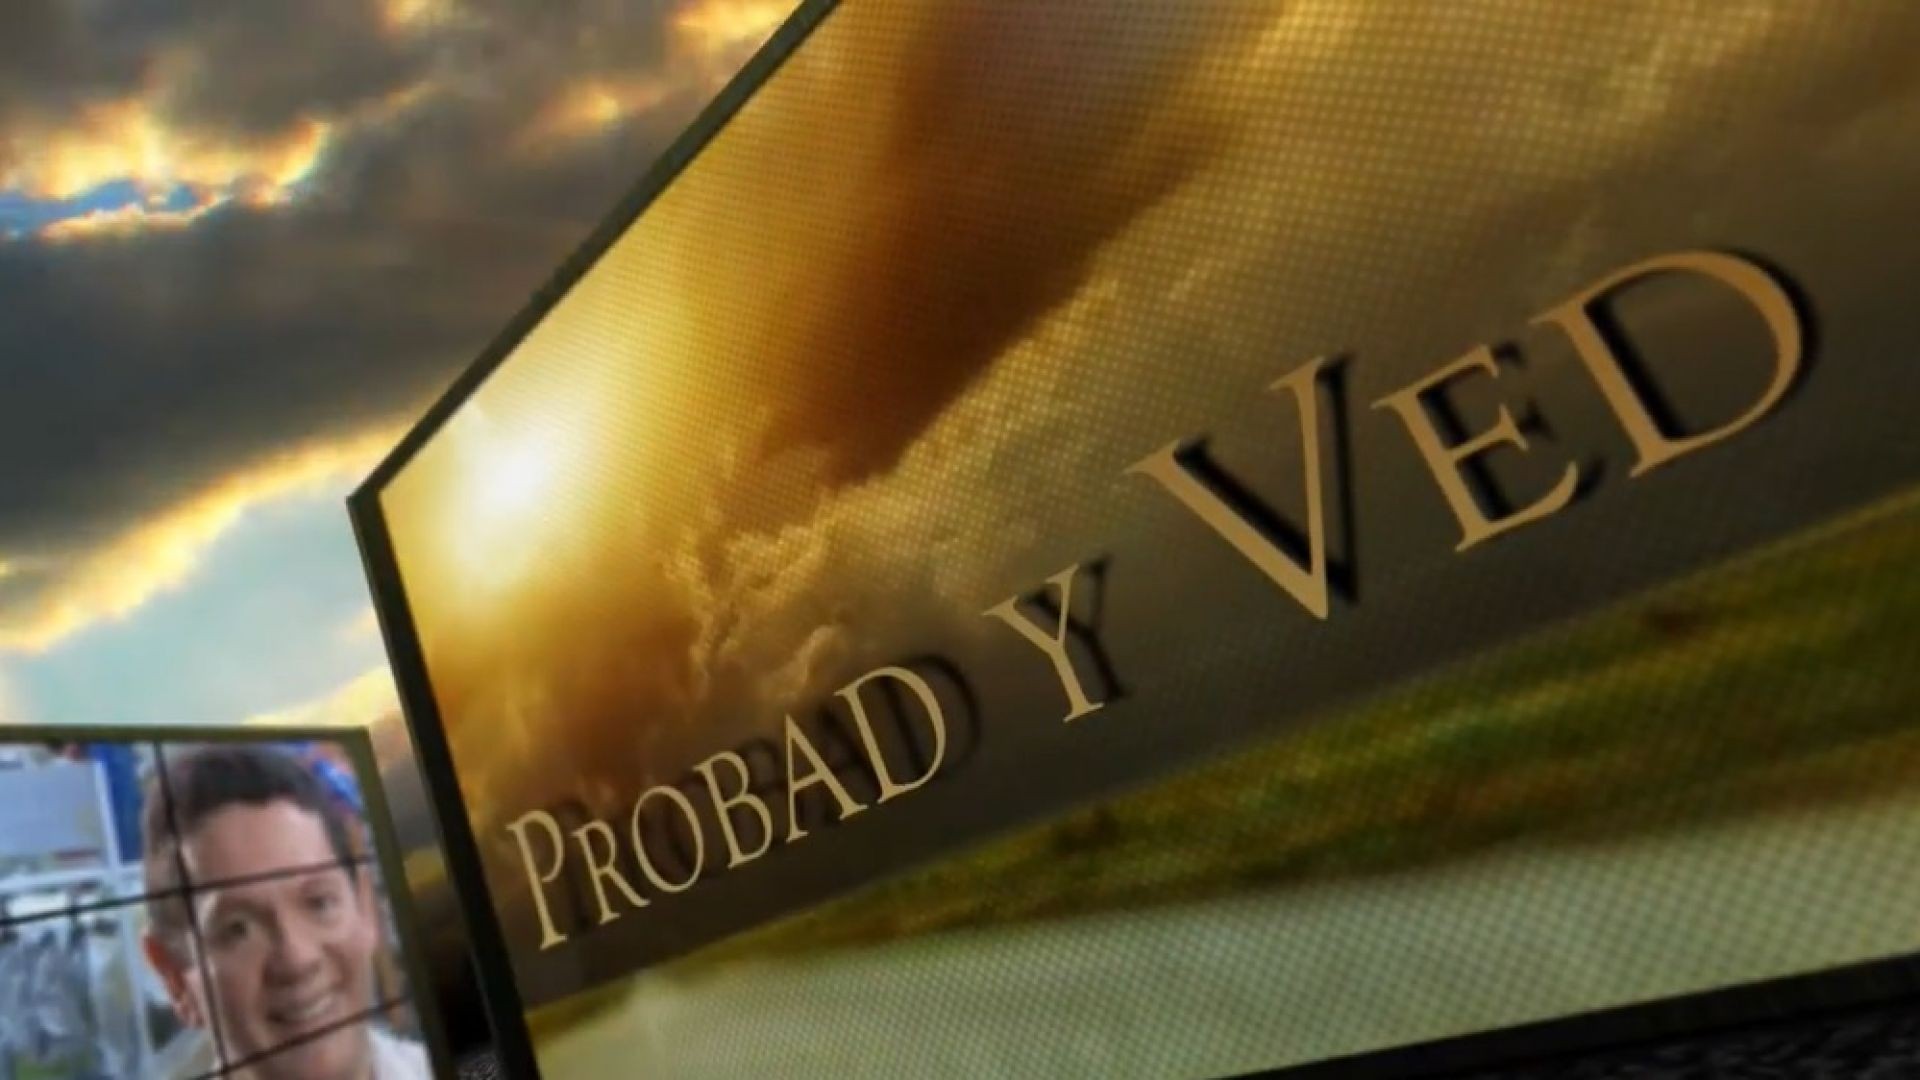 Probad y Ved 2013 - Obediencia y testimonio - 4/May